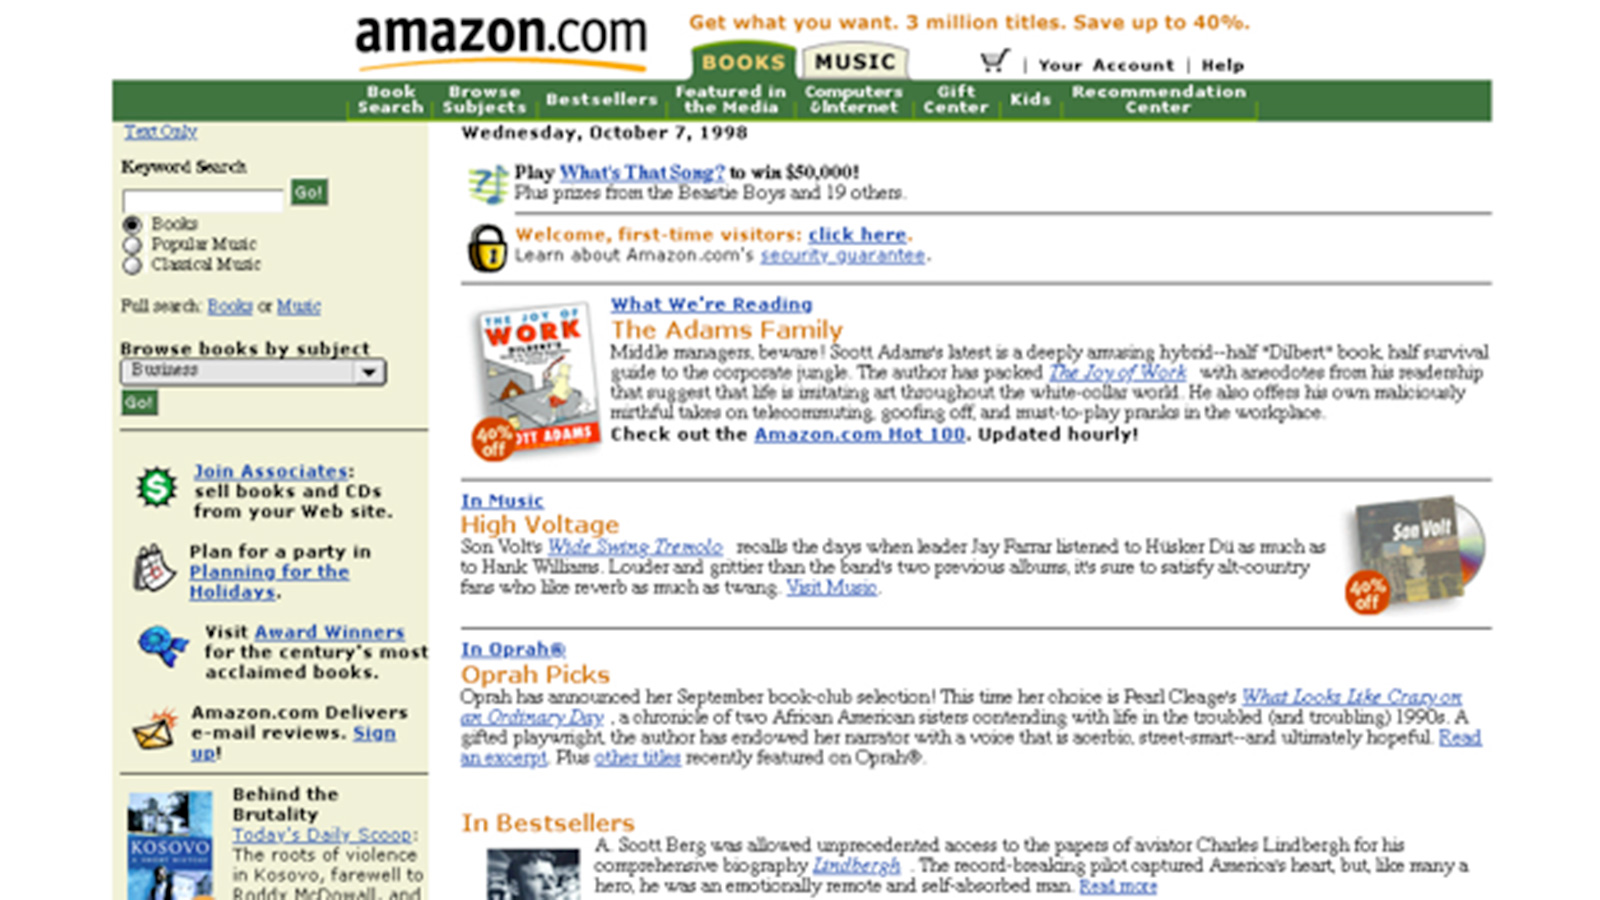 ‪موقع أمازون بعد إضافة قسم الموسيقى إلى جانب الكتب عام 1998‬ (موقع النسخة الأولى)